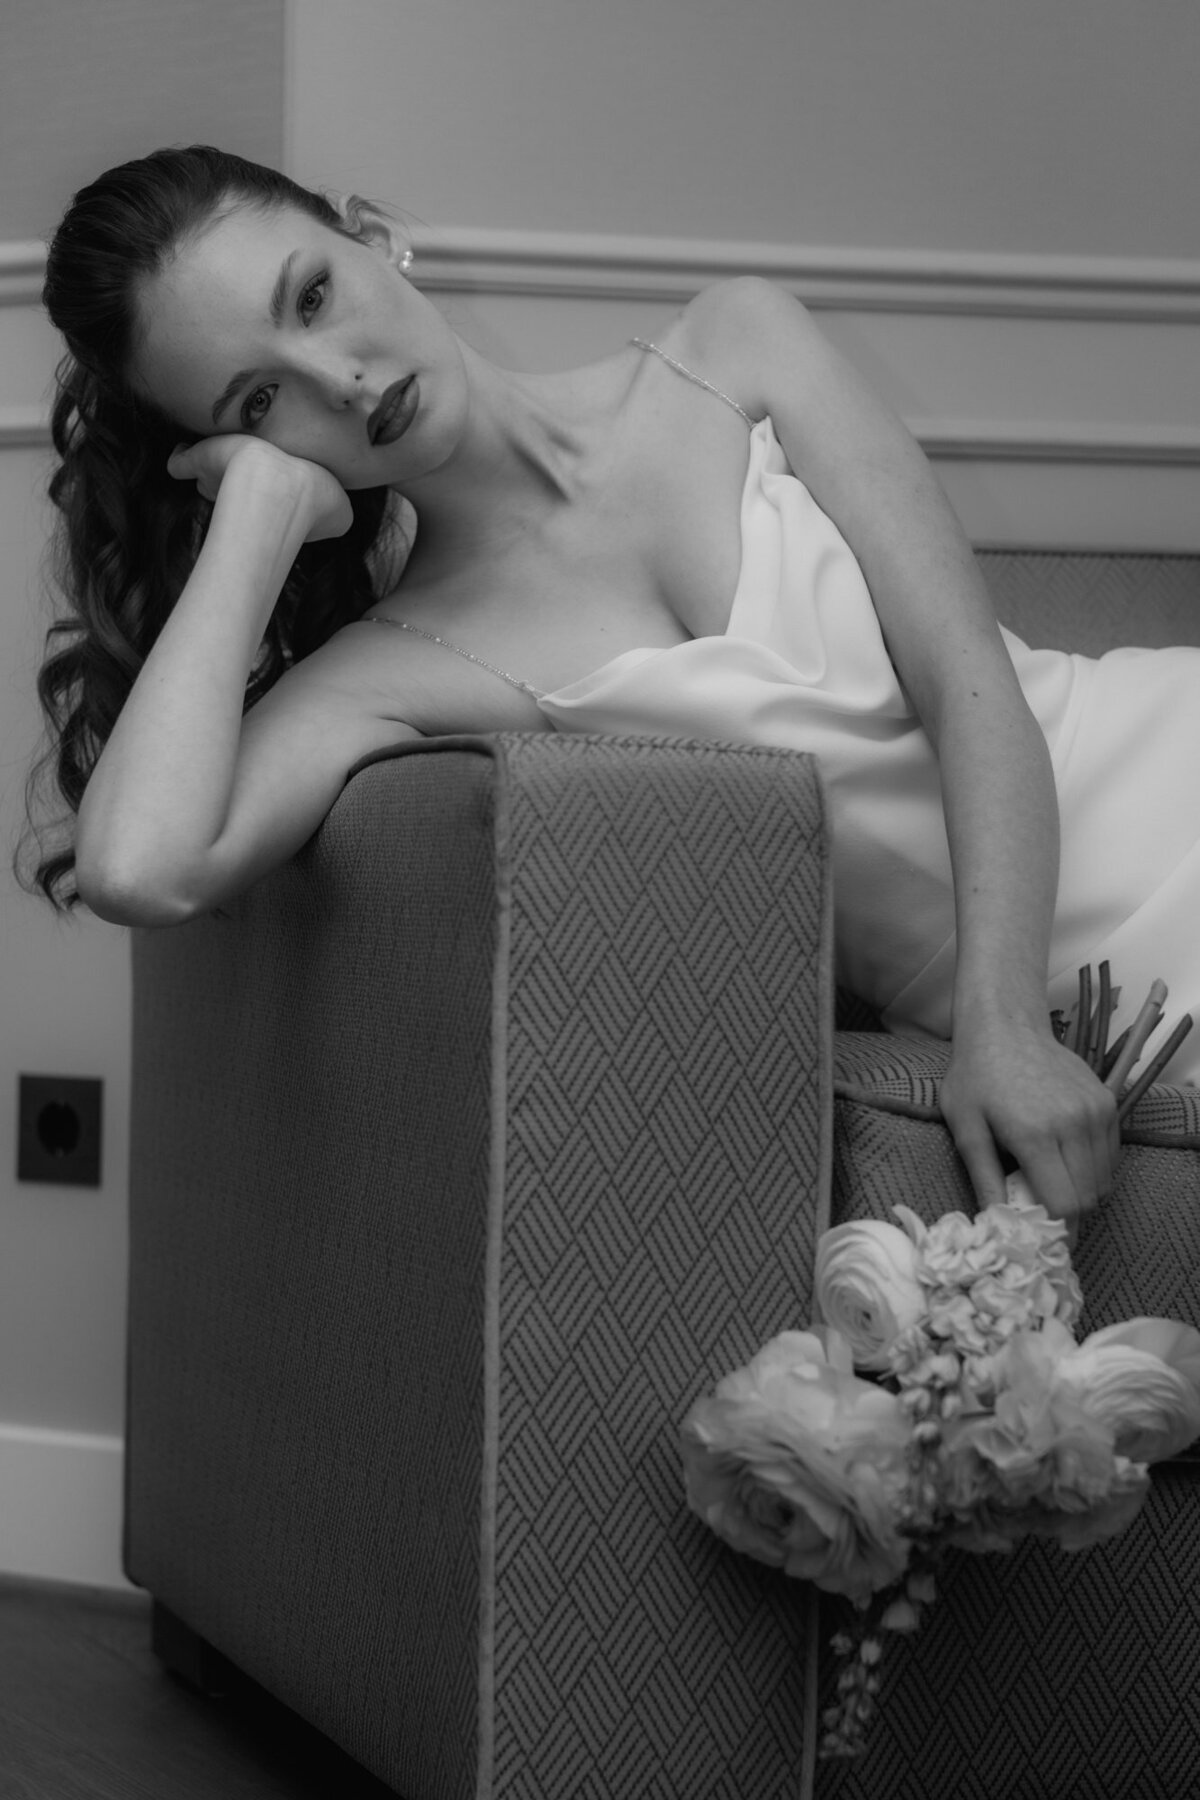 Das Brautmodel liegt den Strauß haltend auf einem Sofa und stützt sich auf eine Hand.